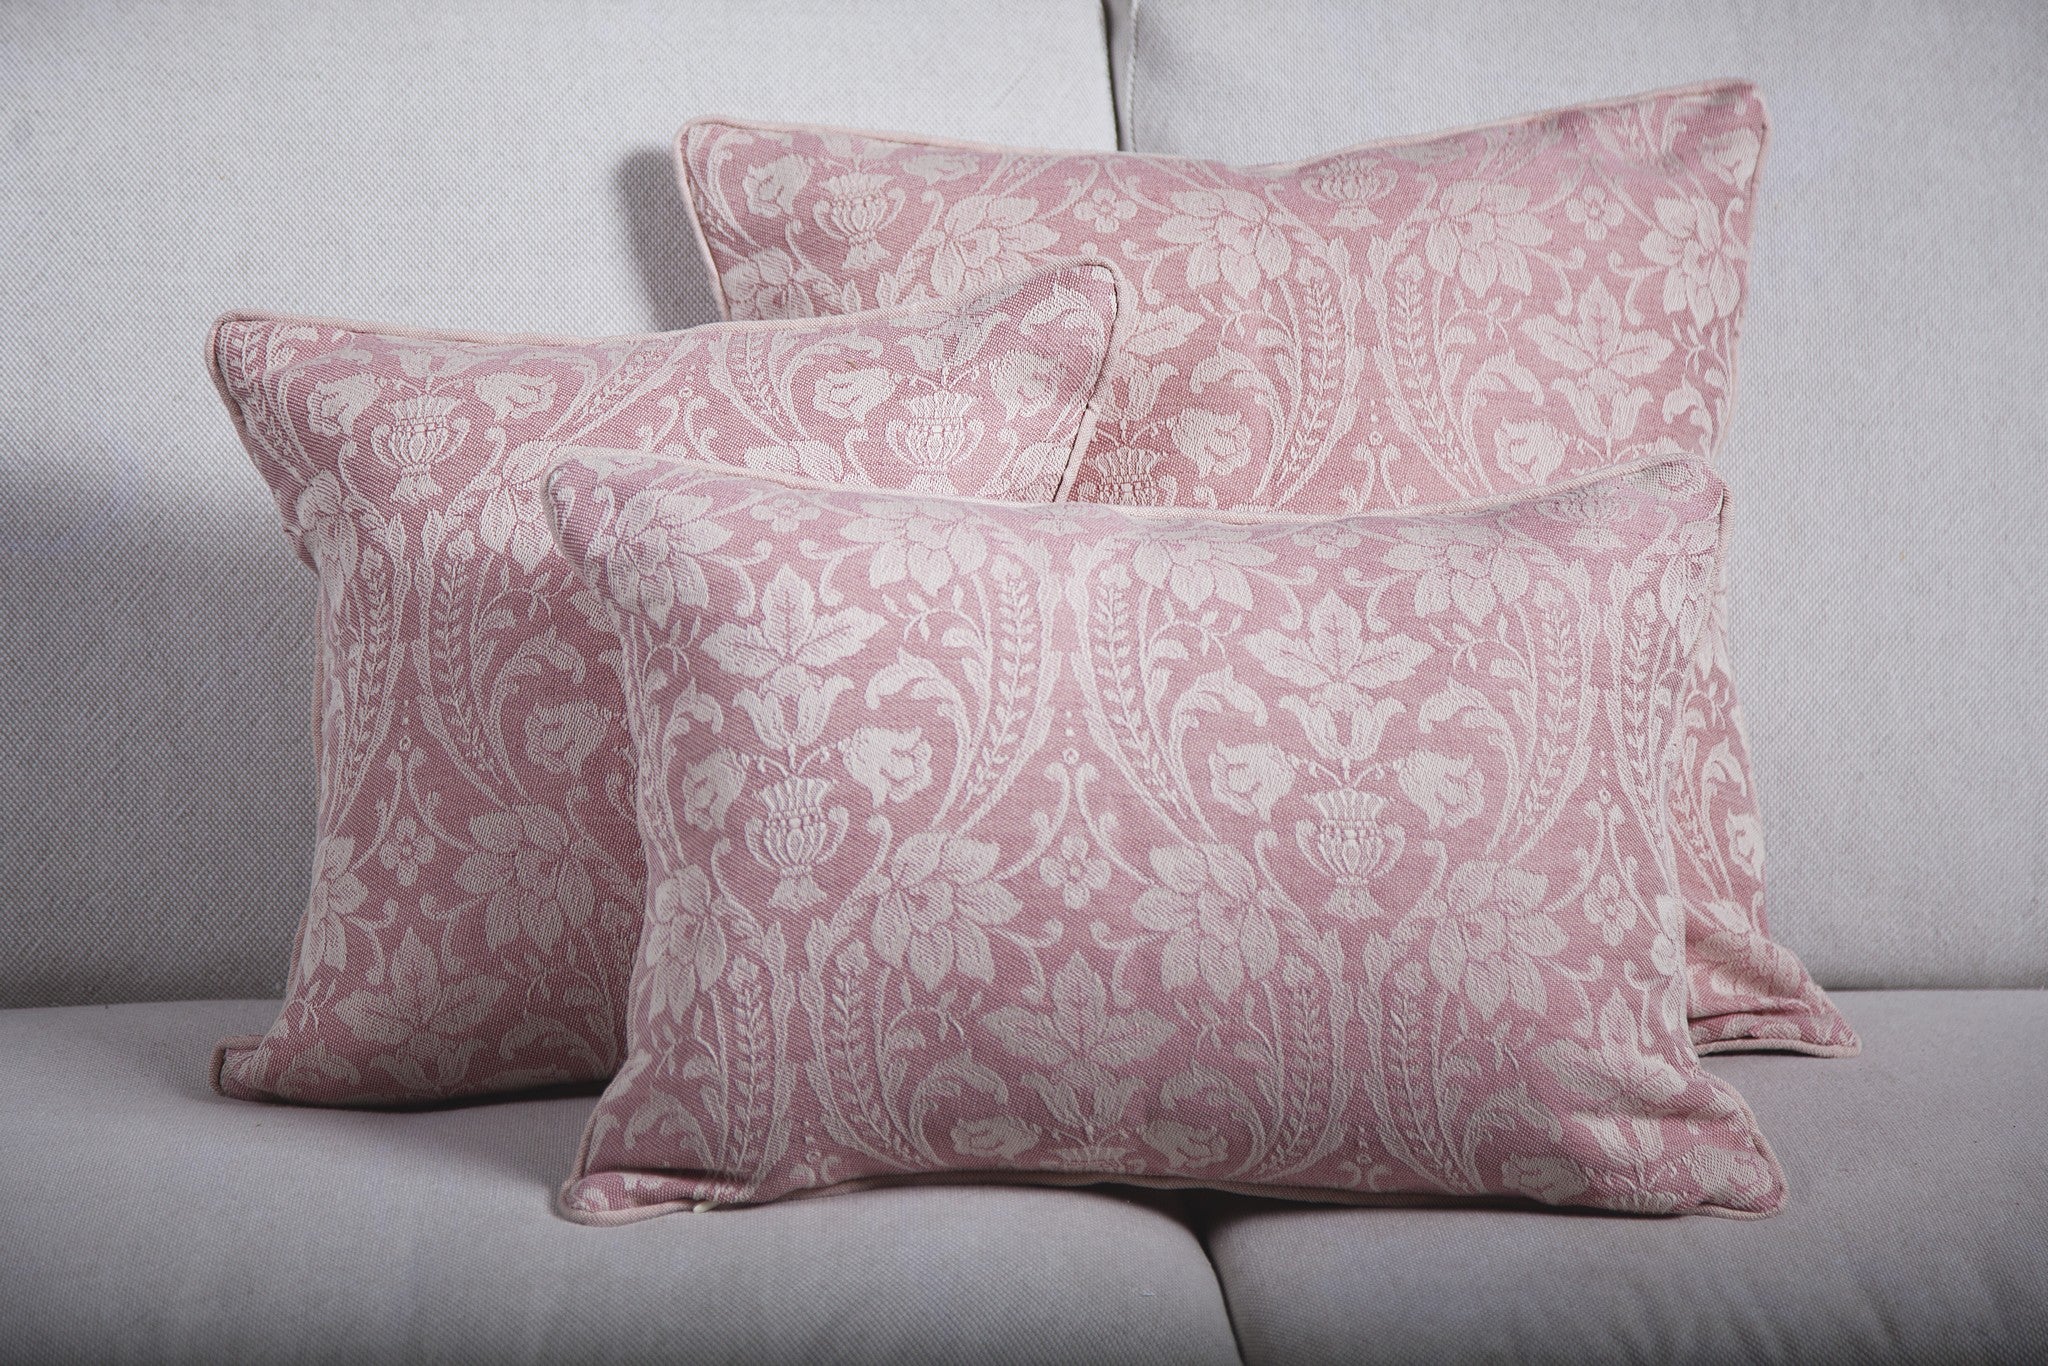 Cuscino in cotone e lino rosa, 60x60